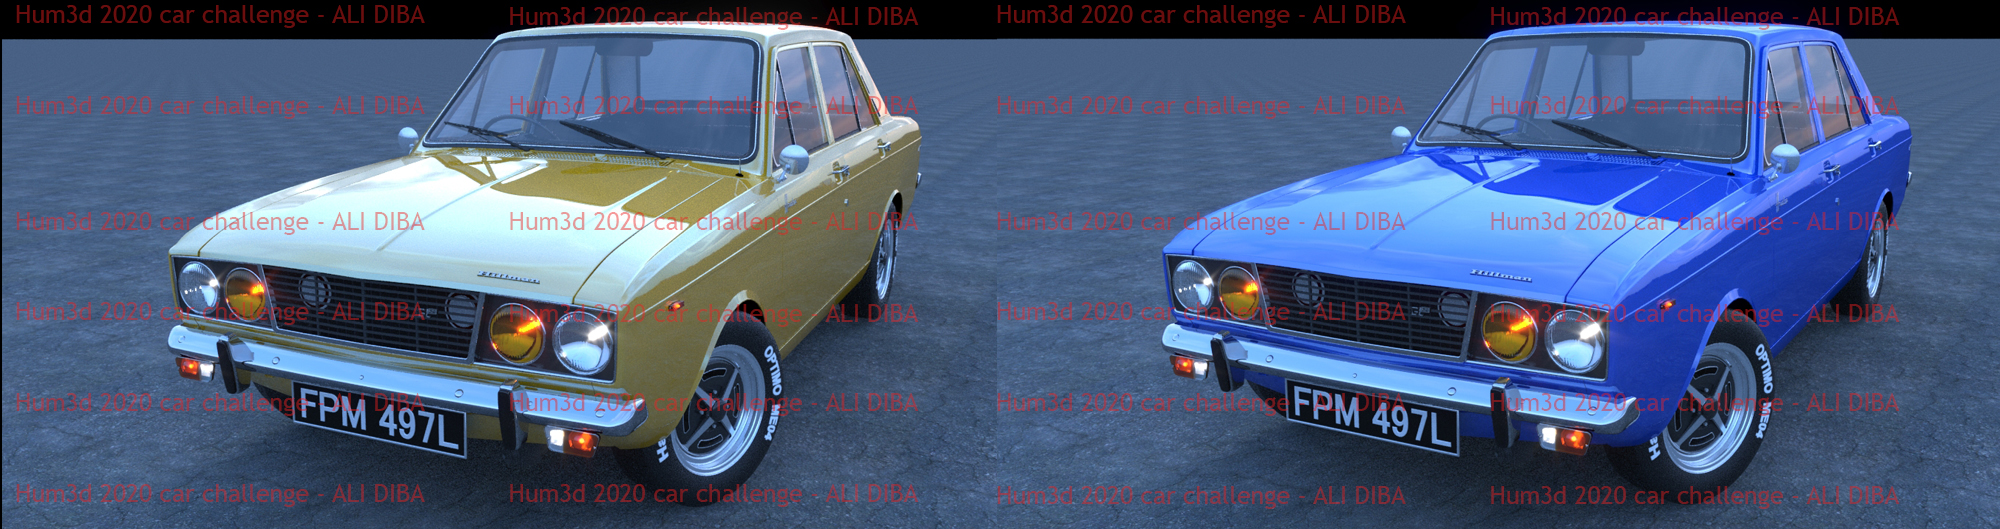 Hilman Hunter - Car render challenge 2020